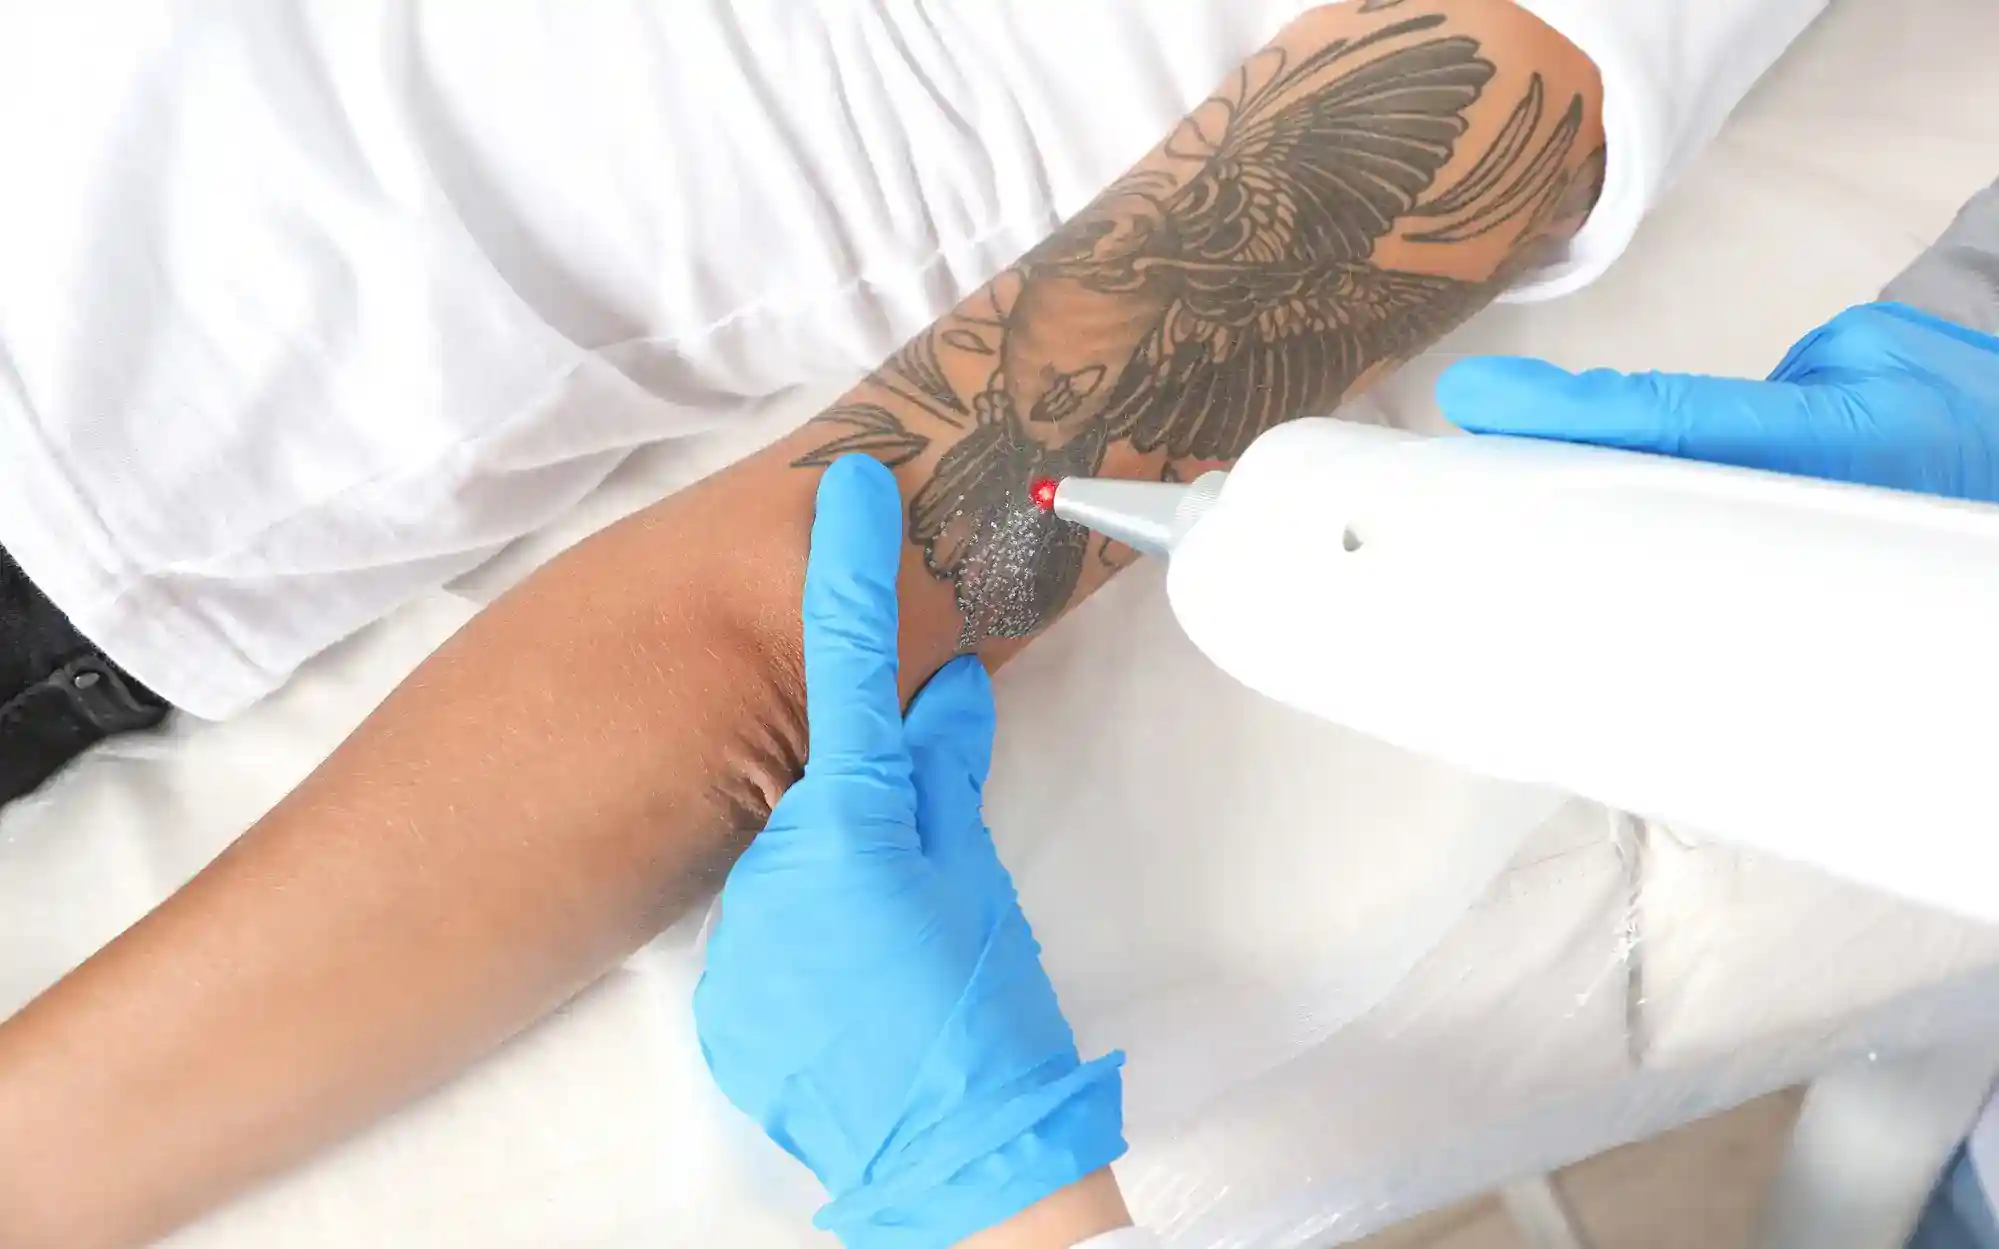 Laser tattoo removal by dermatologist Dr. Joel Schlessinge… | Flickr